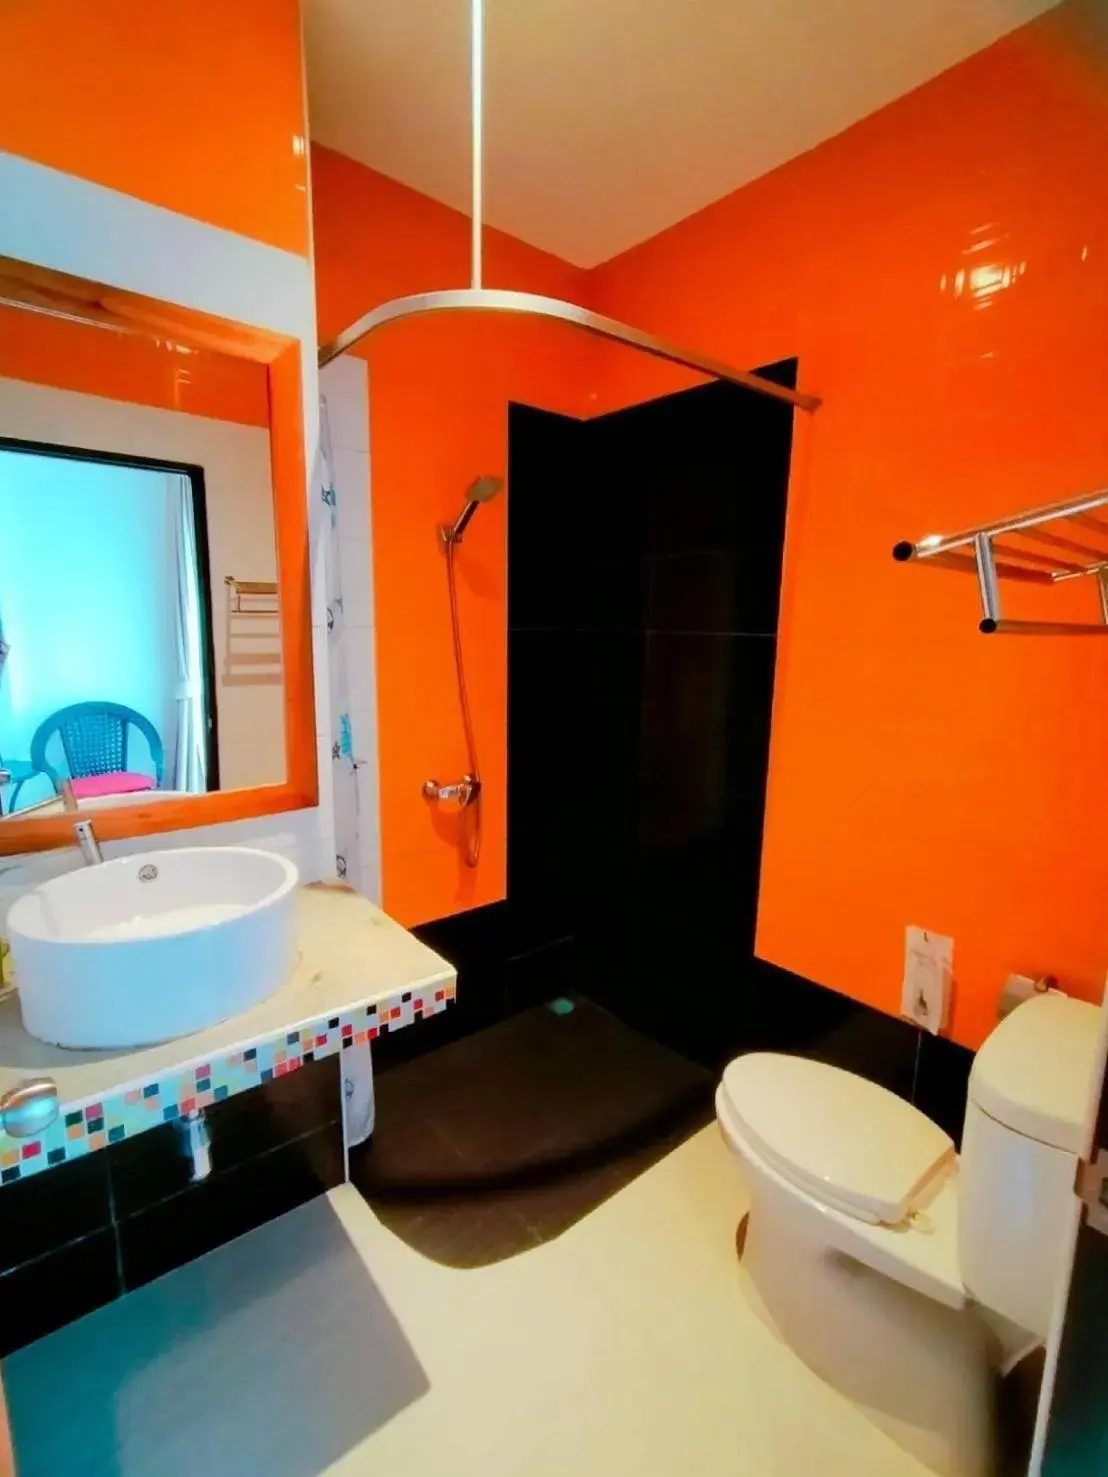 Bathroom in Jing Jit Hotel